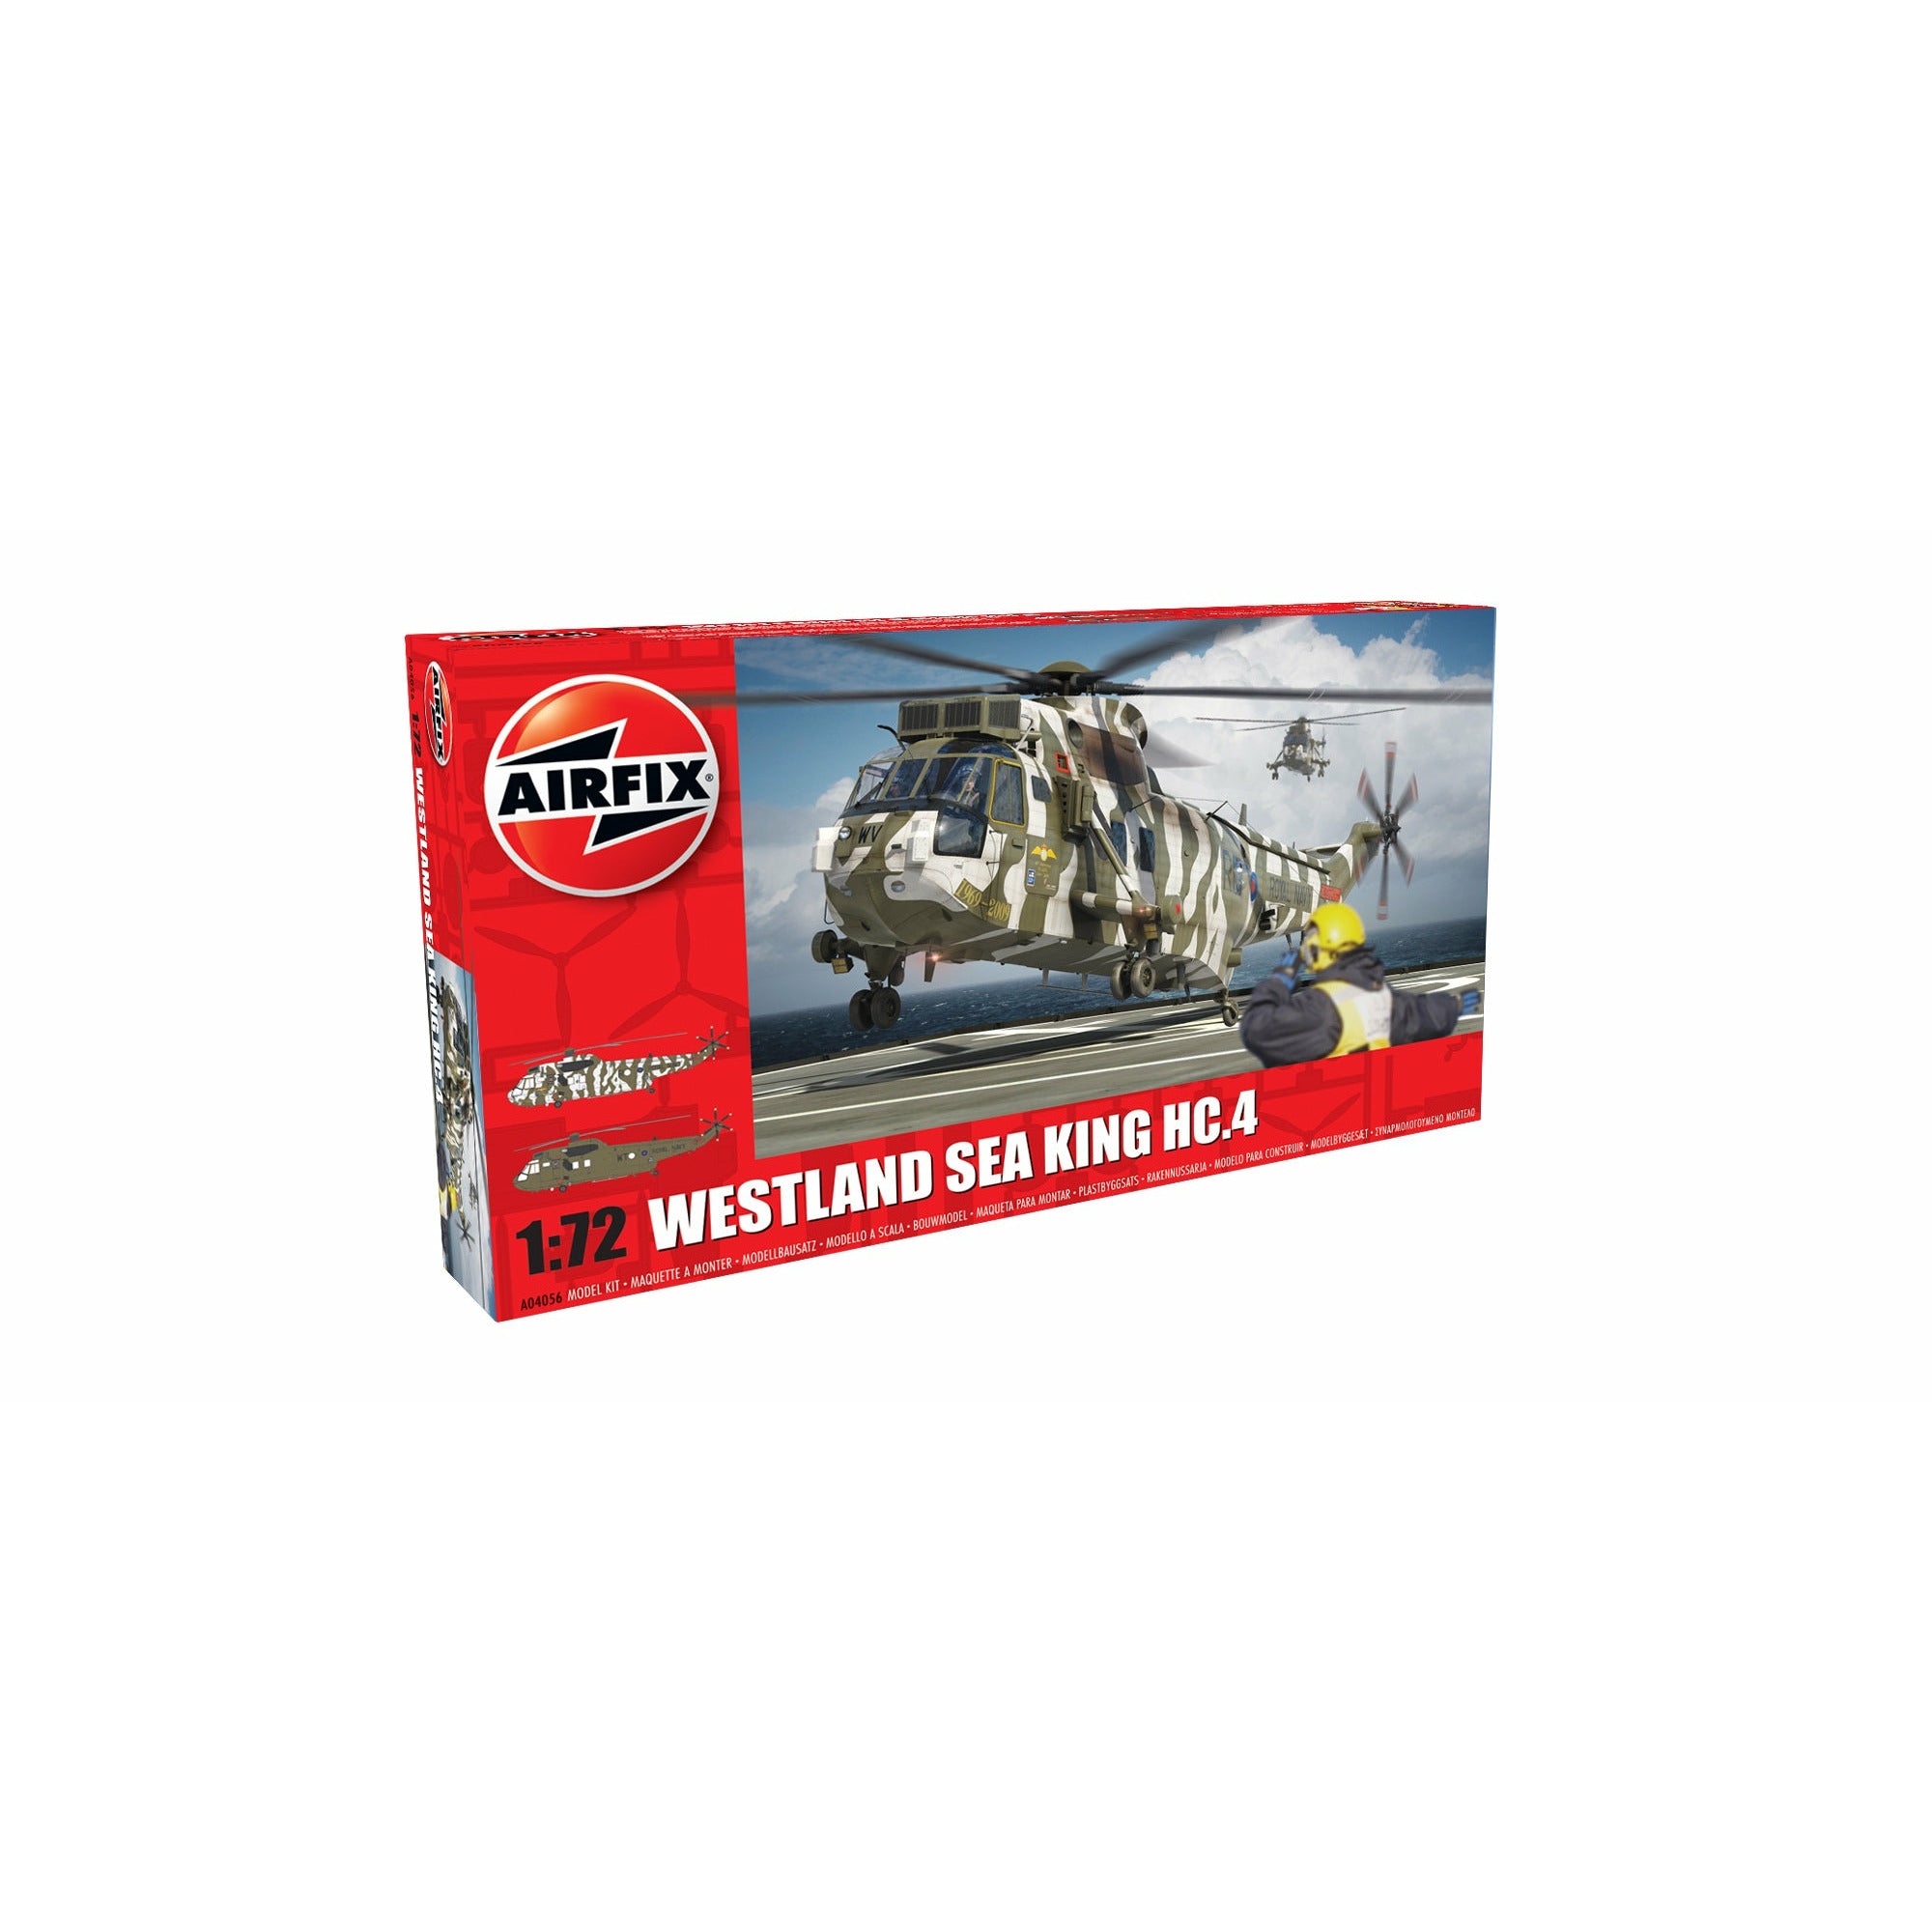 Westland Sea King HC.4 1/72 #04056 by Airfix